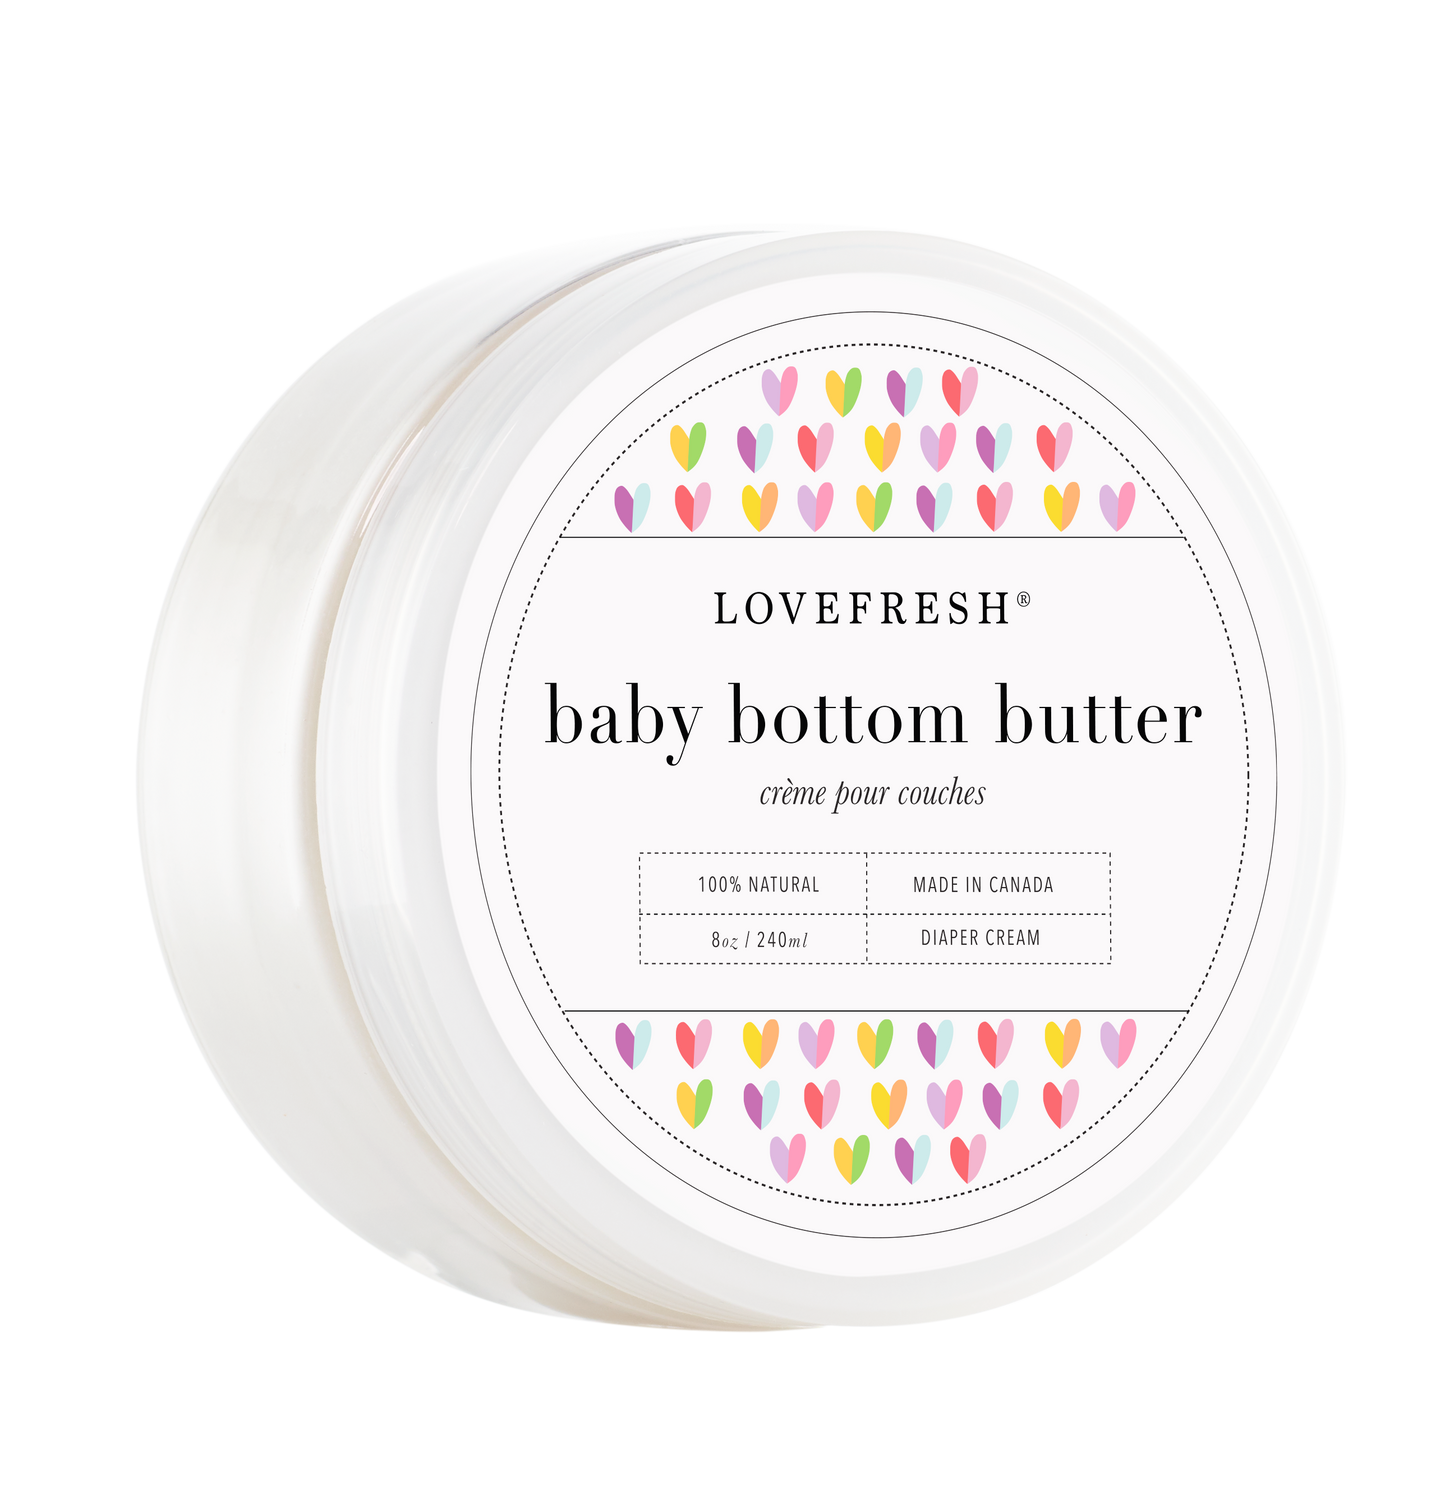 Baby Bottom Butter